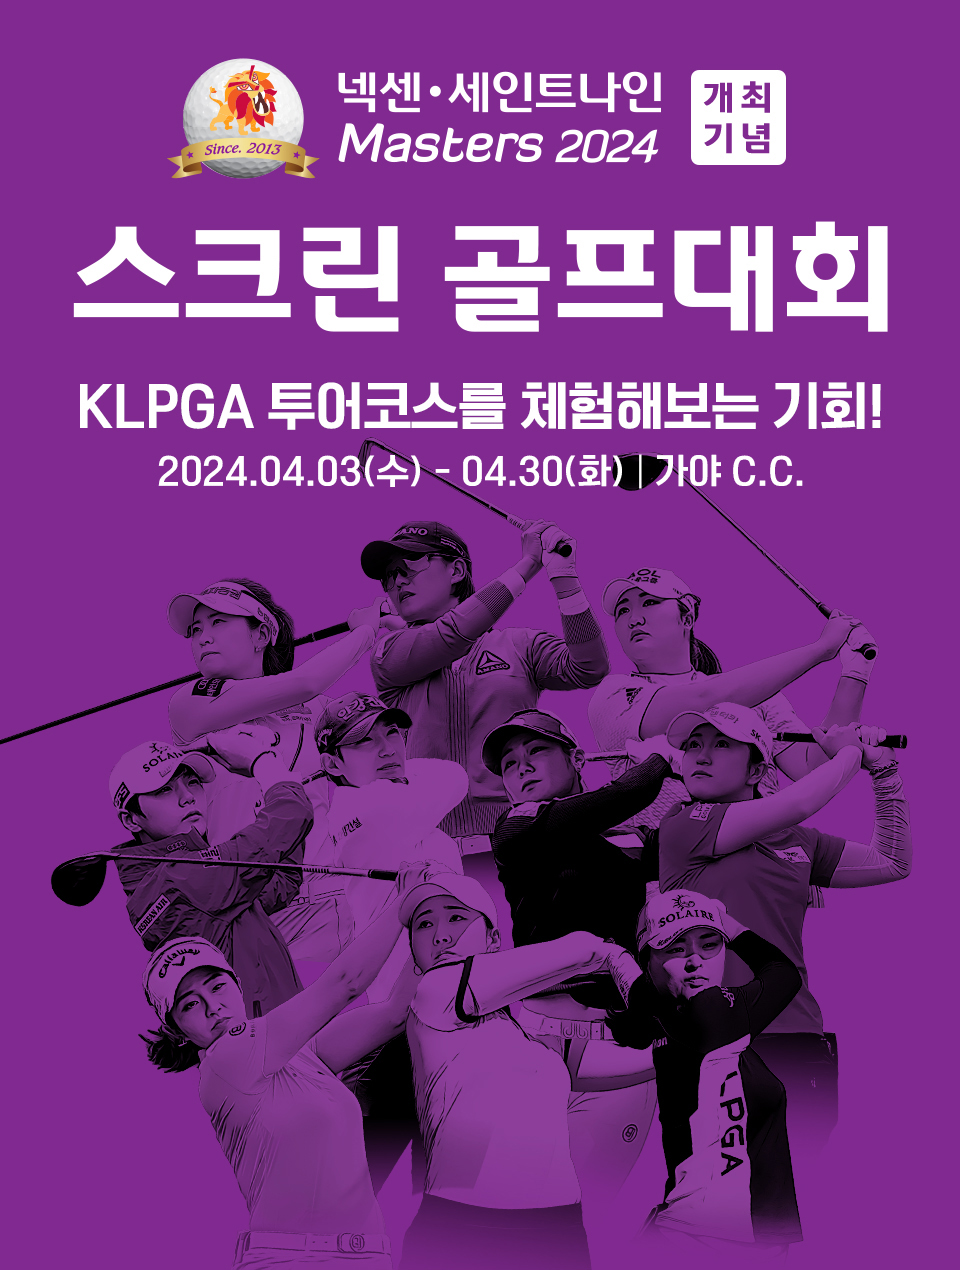 KLPGA 넥센 세인트나인 마스터즈 2024 기념 골프존 스크린골프대회 참가